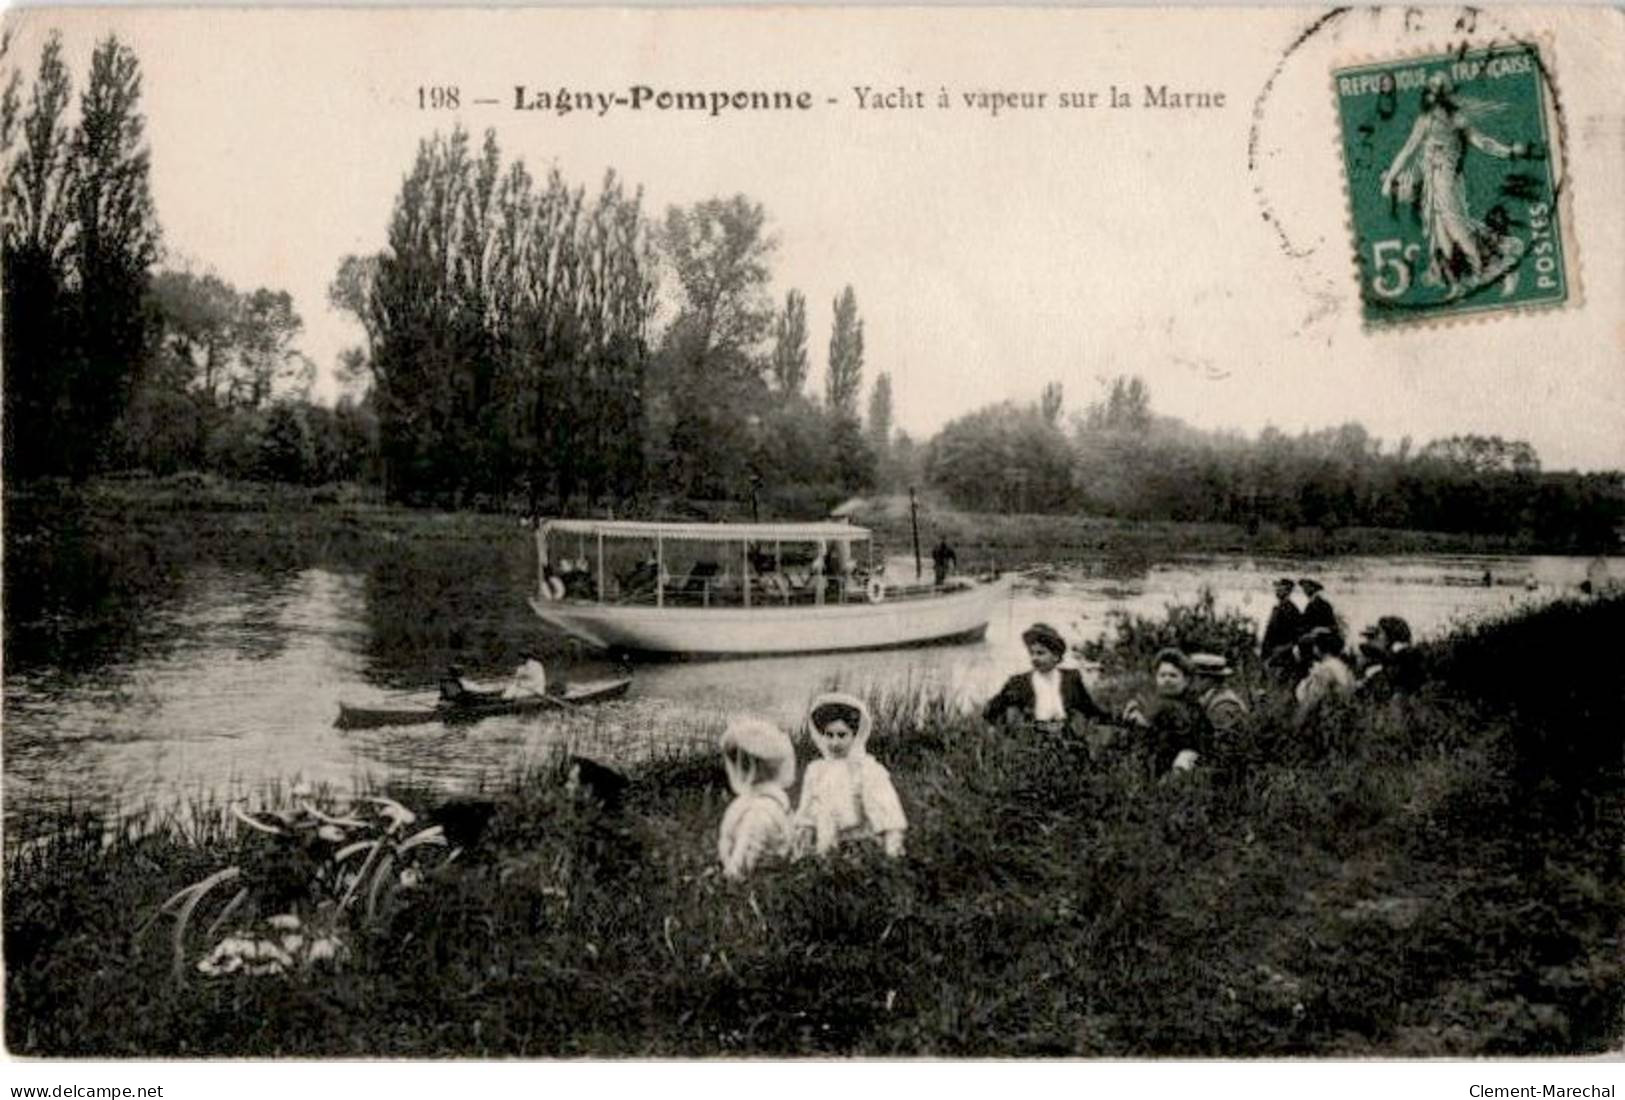 LAGNY: Pomponne Yacht à Vapeur Sur La Marne - état - Lagny Sur Marne